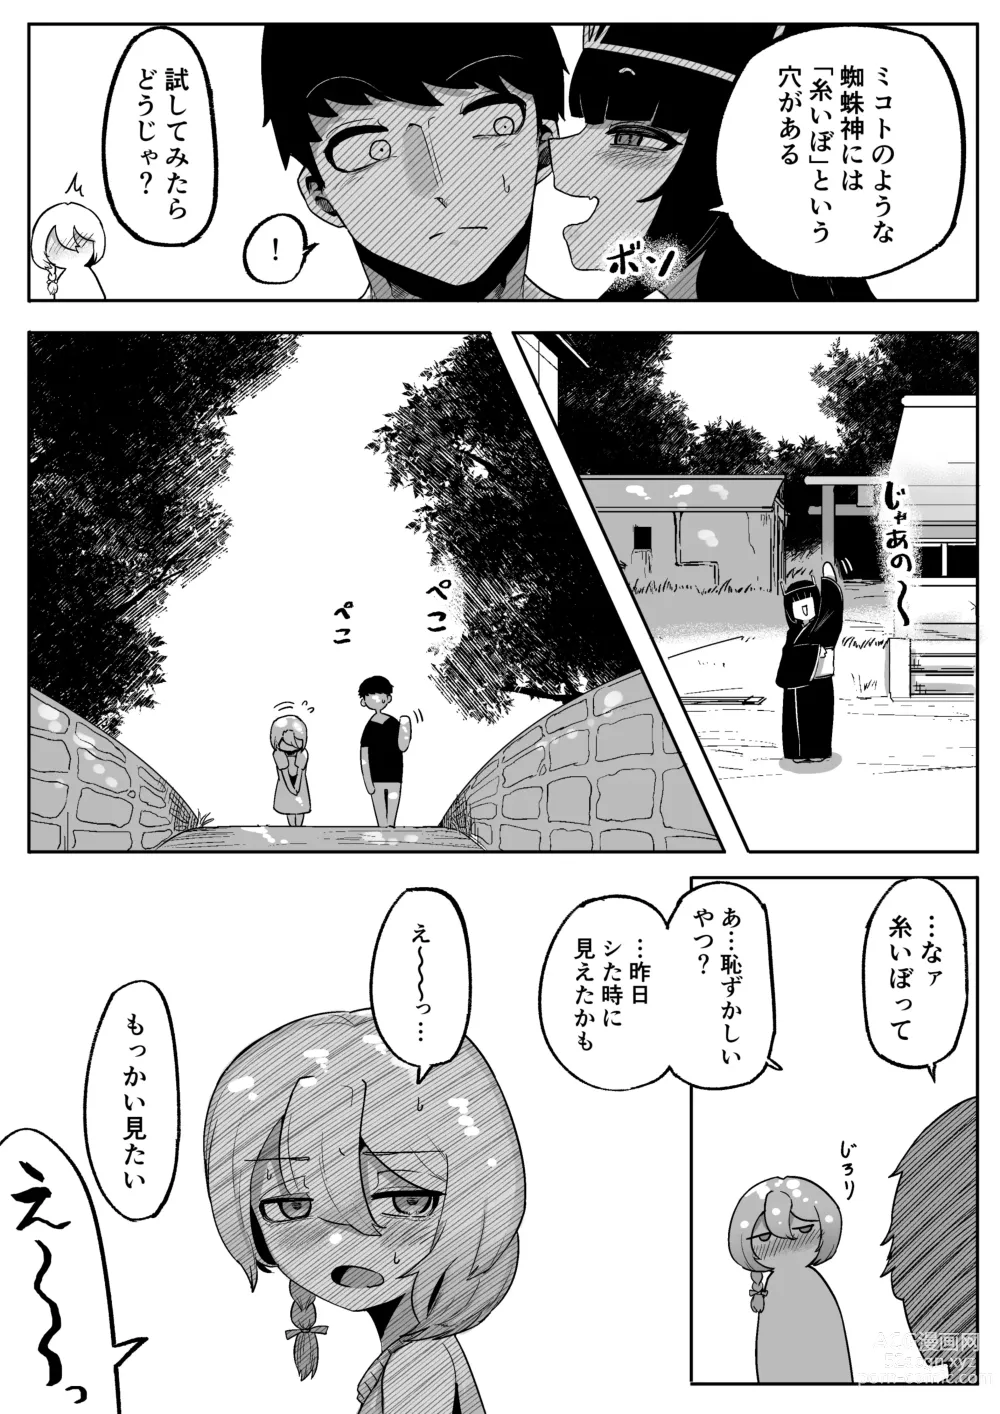 Page 41 of doujinshi Kamisama to Kodomo ga Dekiru made